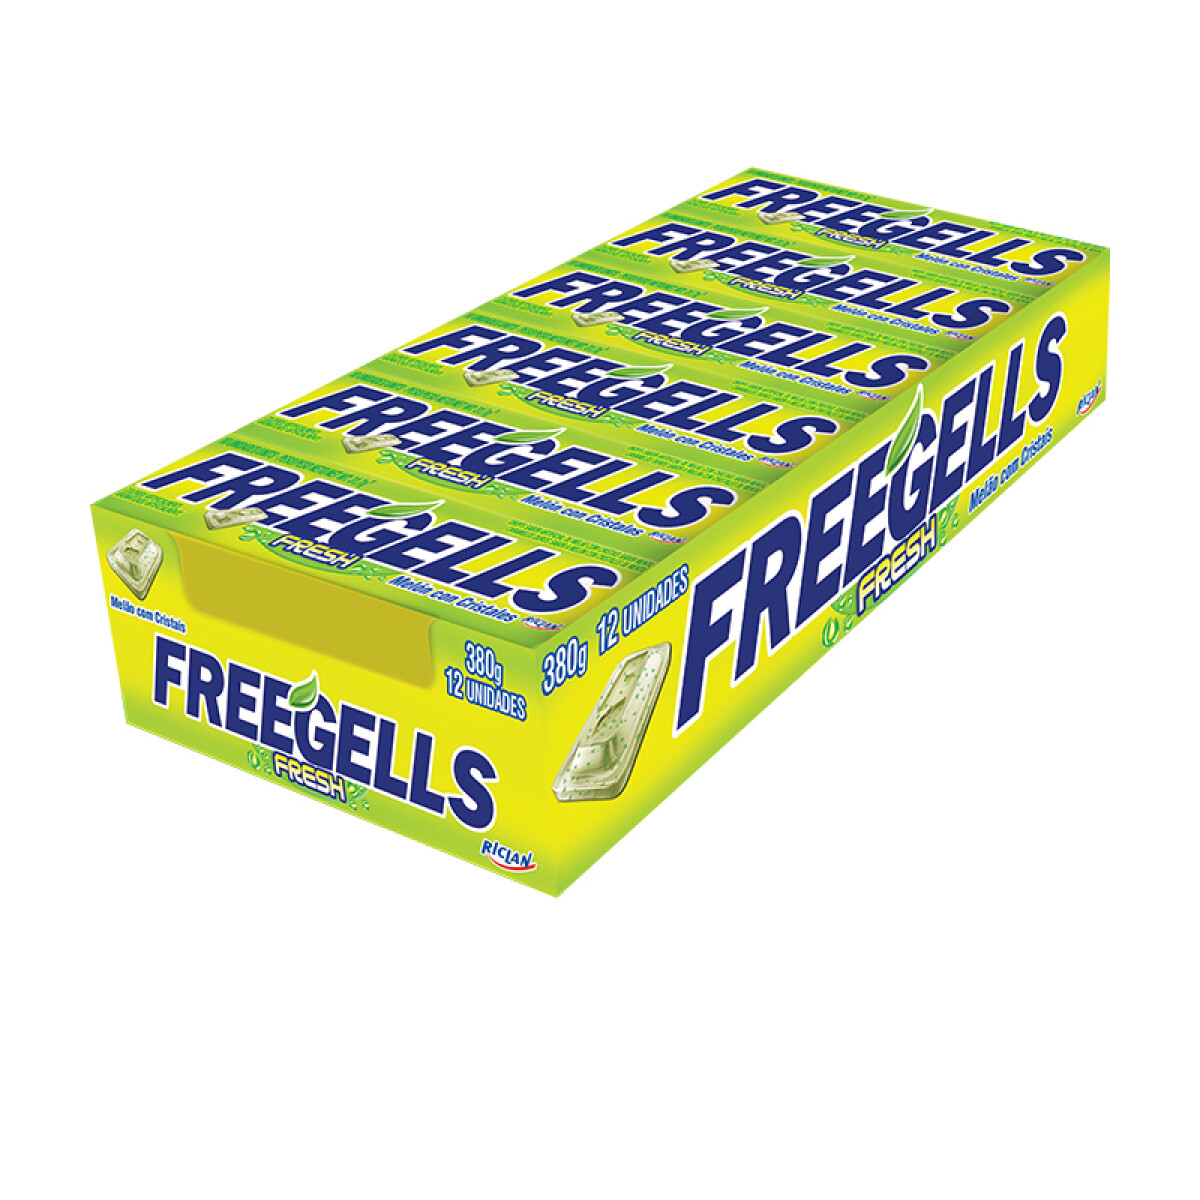 Pastillas FREEGELLS x12 Unidades - Fresh Melon con Cristales 